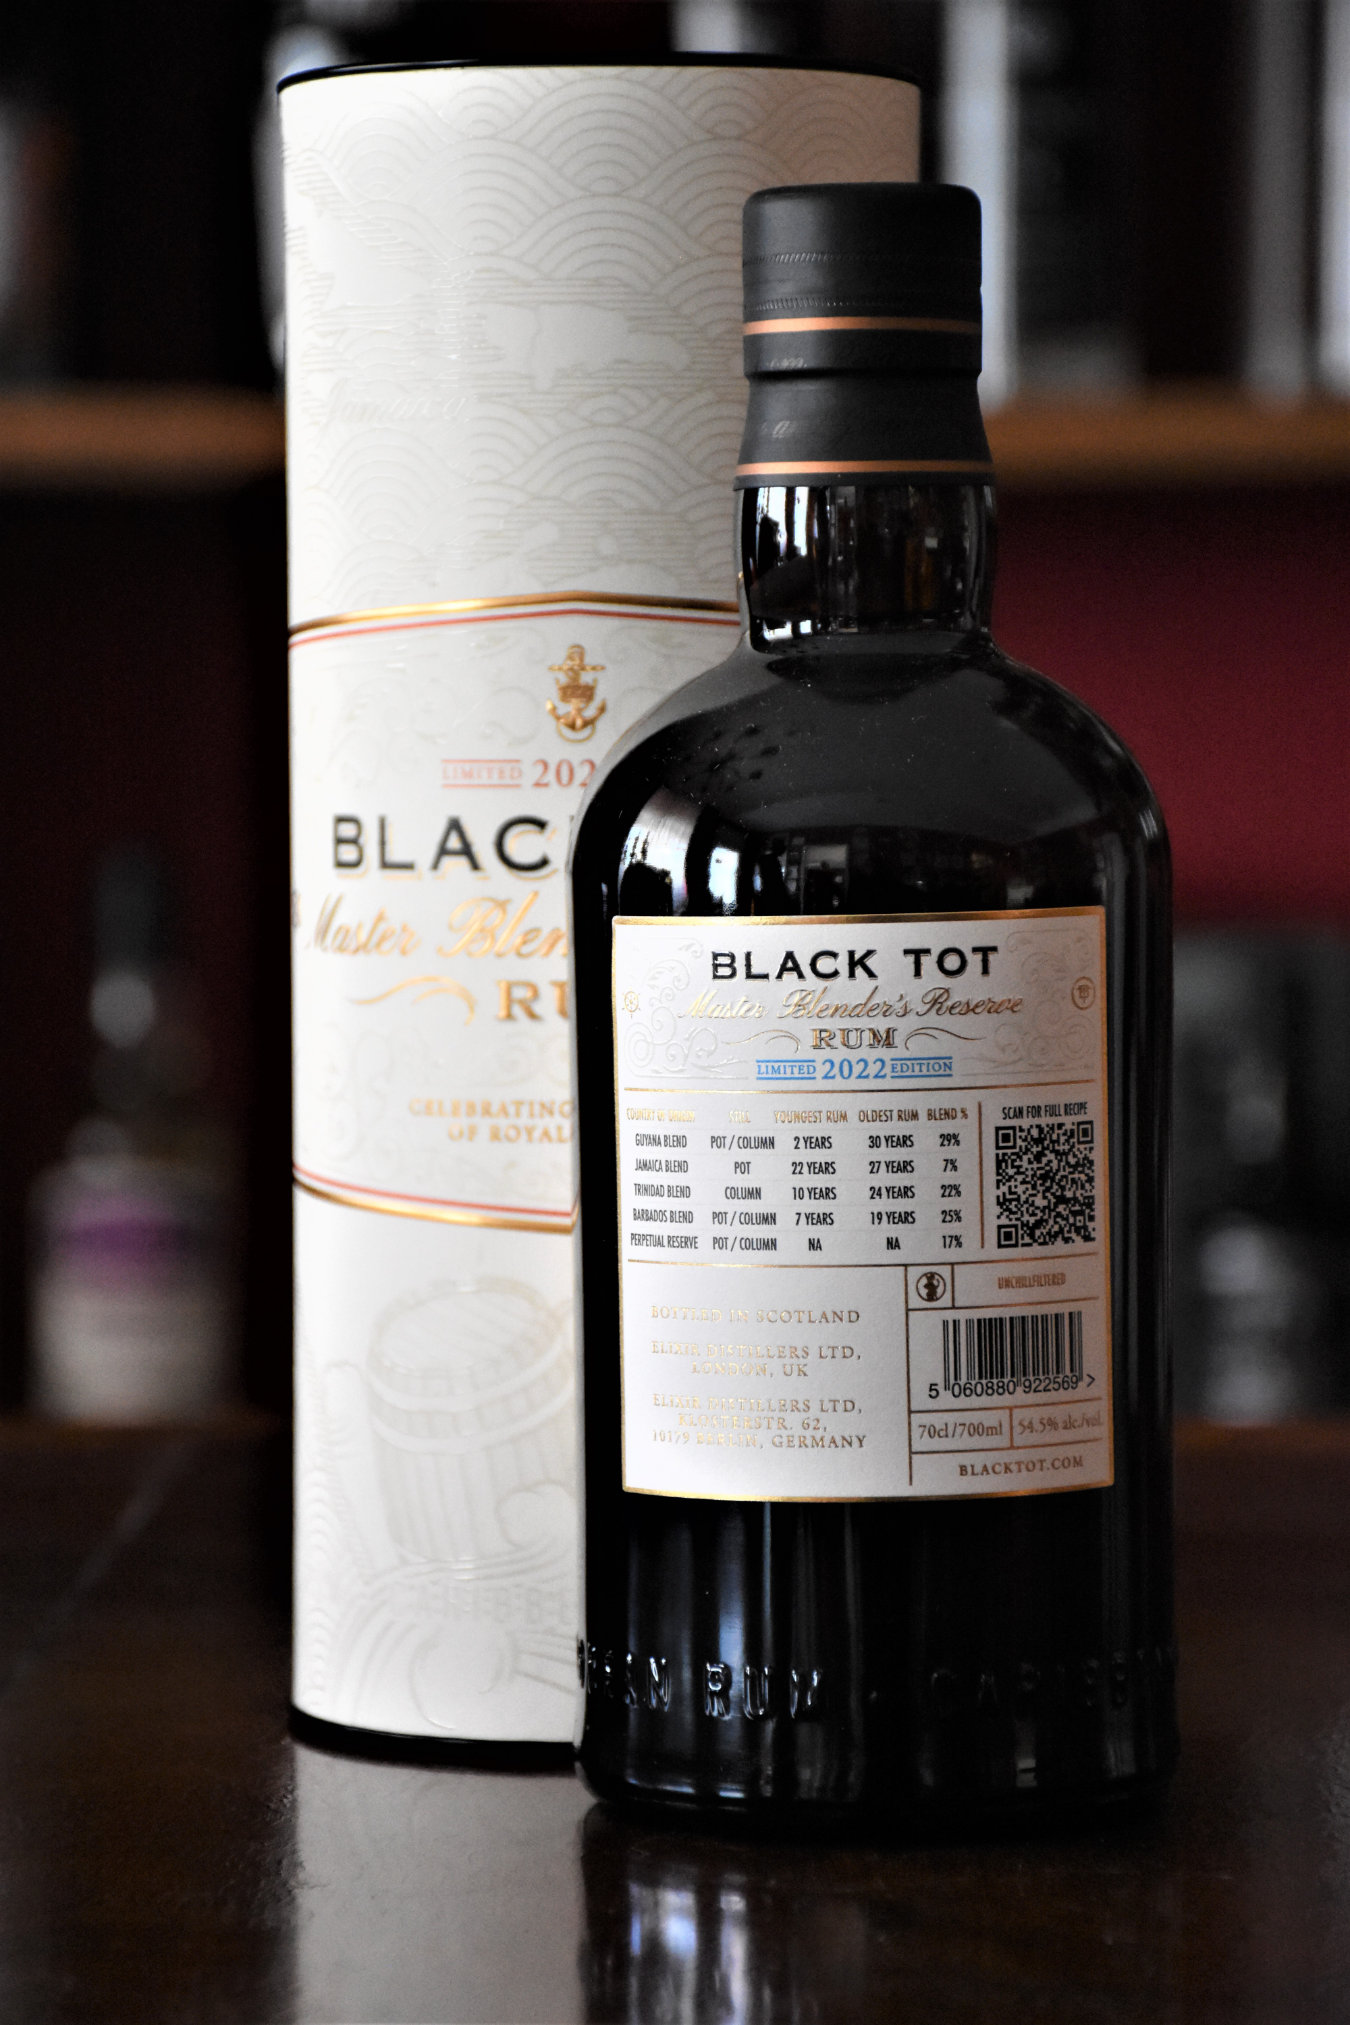 Black Tot - Master Blender´s Reserve 2022 Edition, 54,5% Alc.Vol., Elixier Distillers